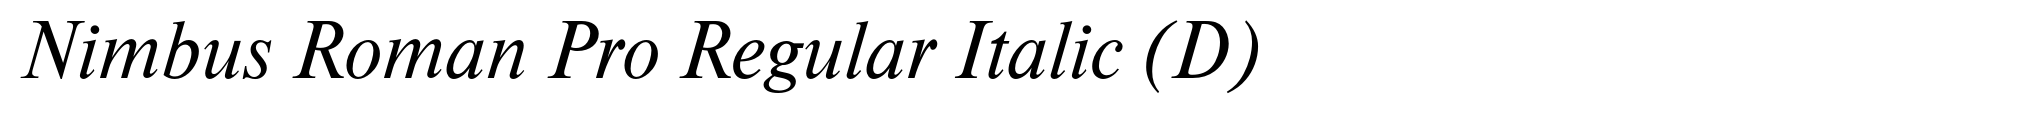 Nimbus Roman Pro Regular Italic (D) image